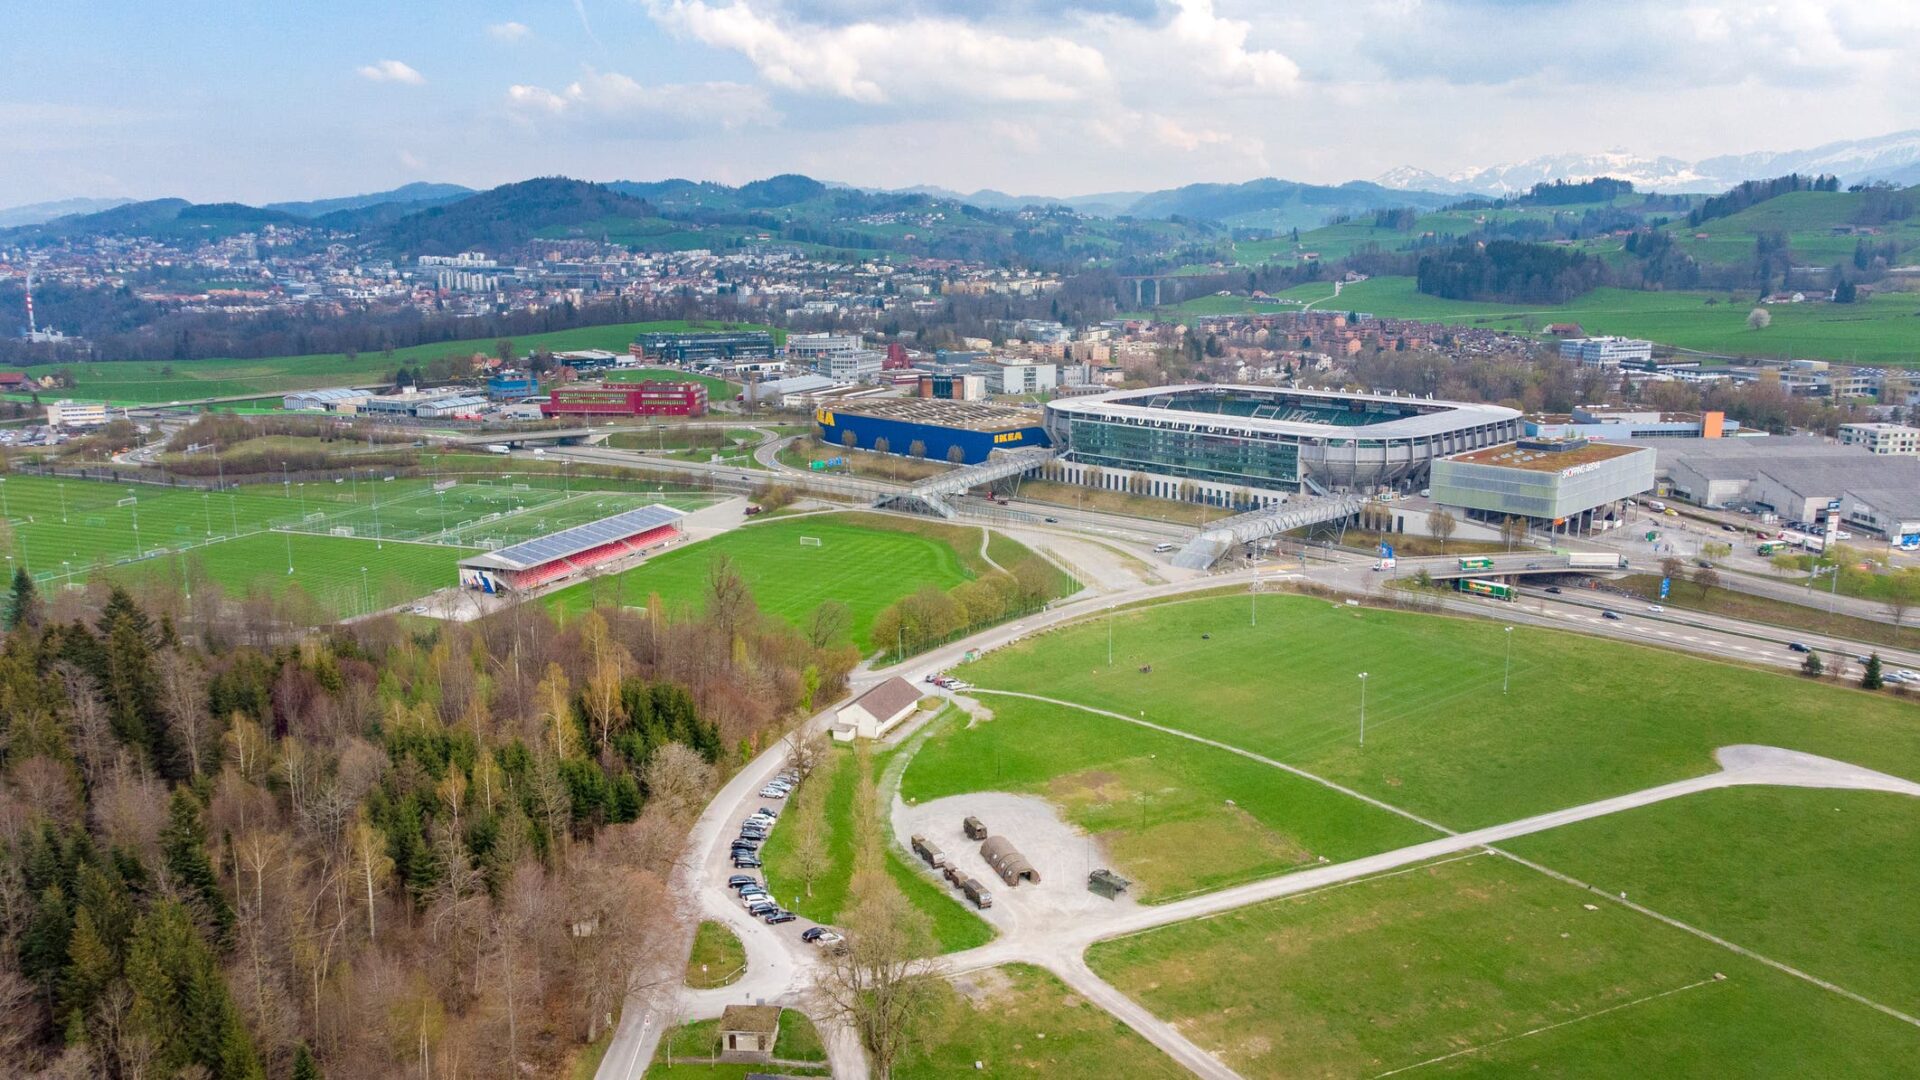 St.Gallen unterliegt Mollis bei der Vergabe des eidgenössischen Schwing- und Älplerfestes 2025 überraschend deutlich